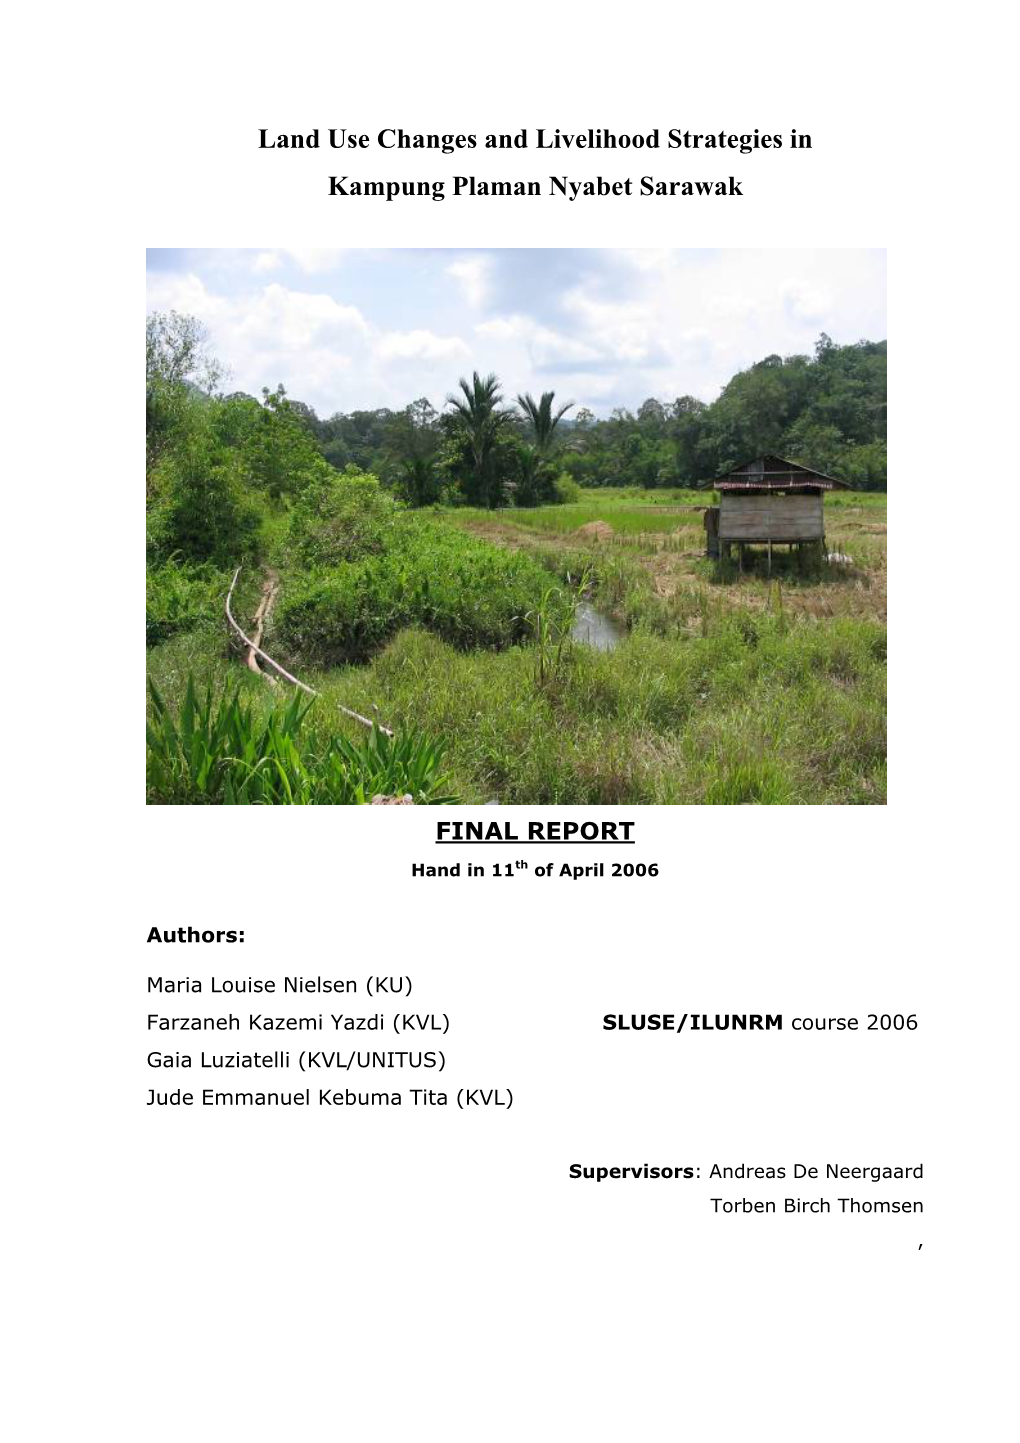 Land Use Changes and Livelihood Strategies in Kampung Plaman Nyabet Sarawak